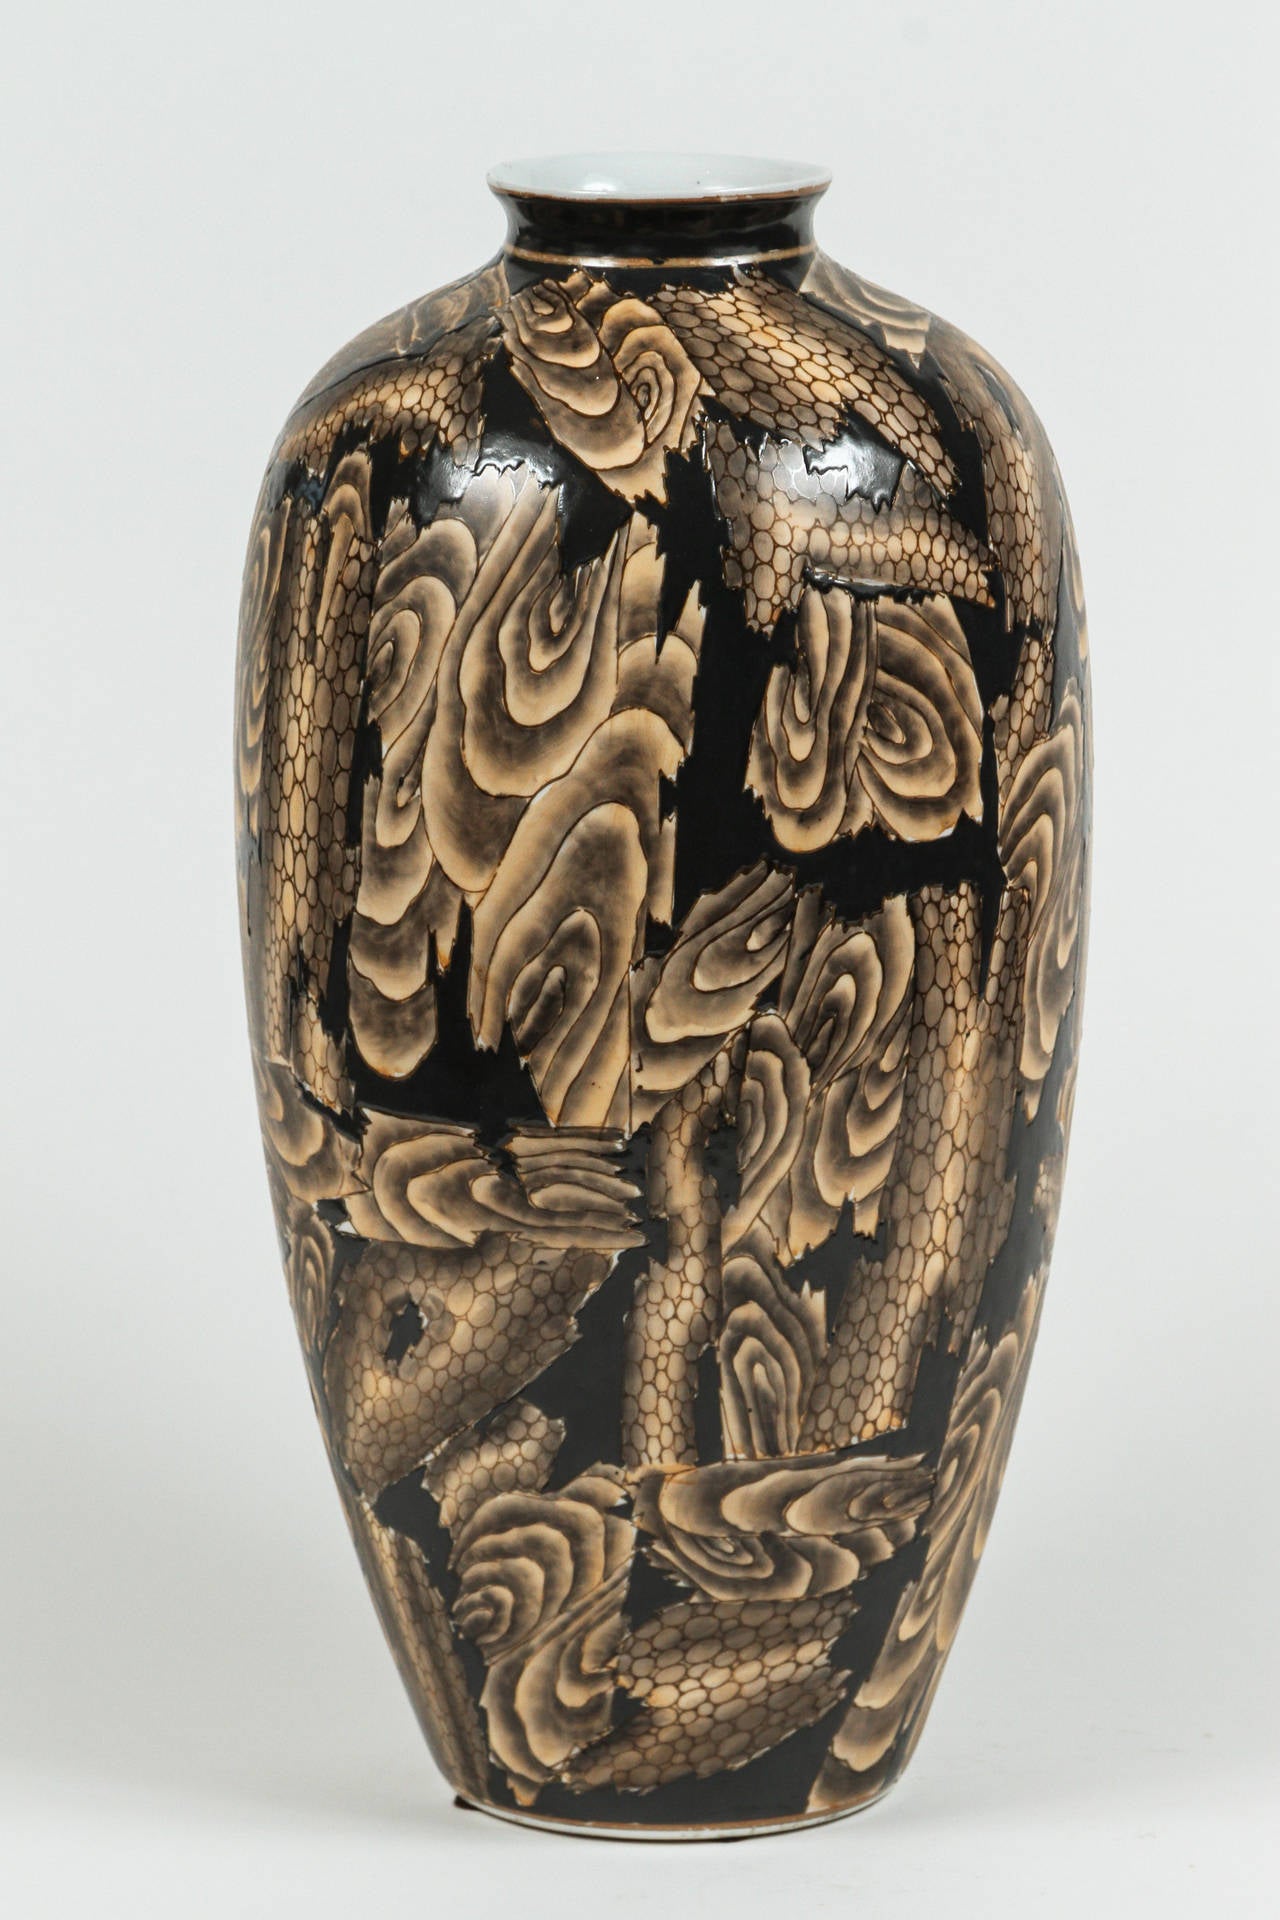 Grand vase japonais très unique avec un motif abstrait dans une variété de tons bruns. La glaçure brune la plus profonde est en relief, ce qui confère au vase une merveilleuse texture tactile.